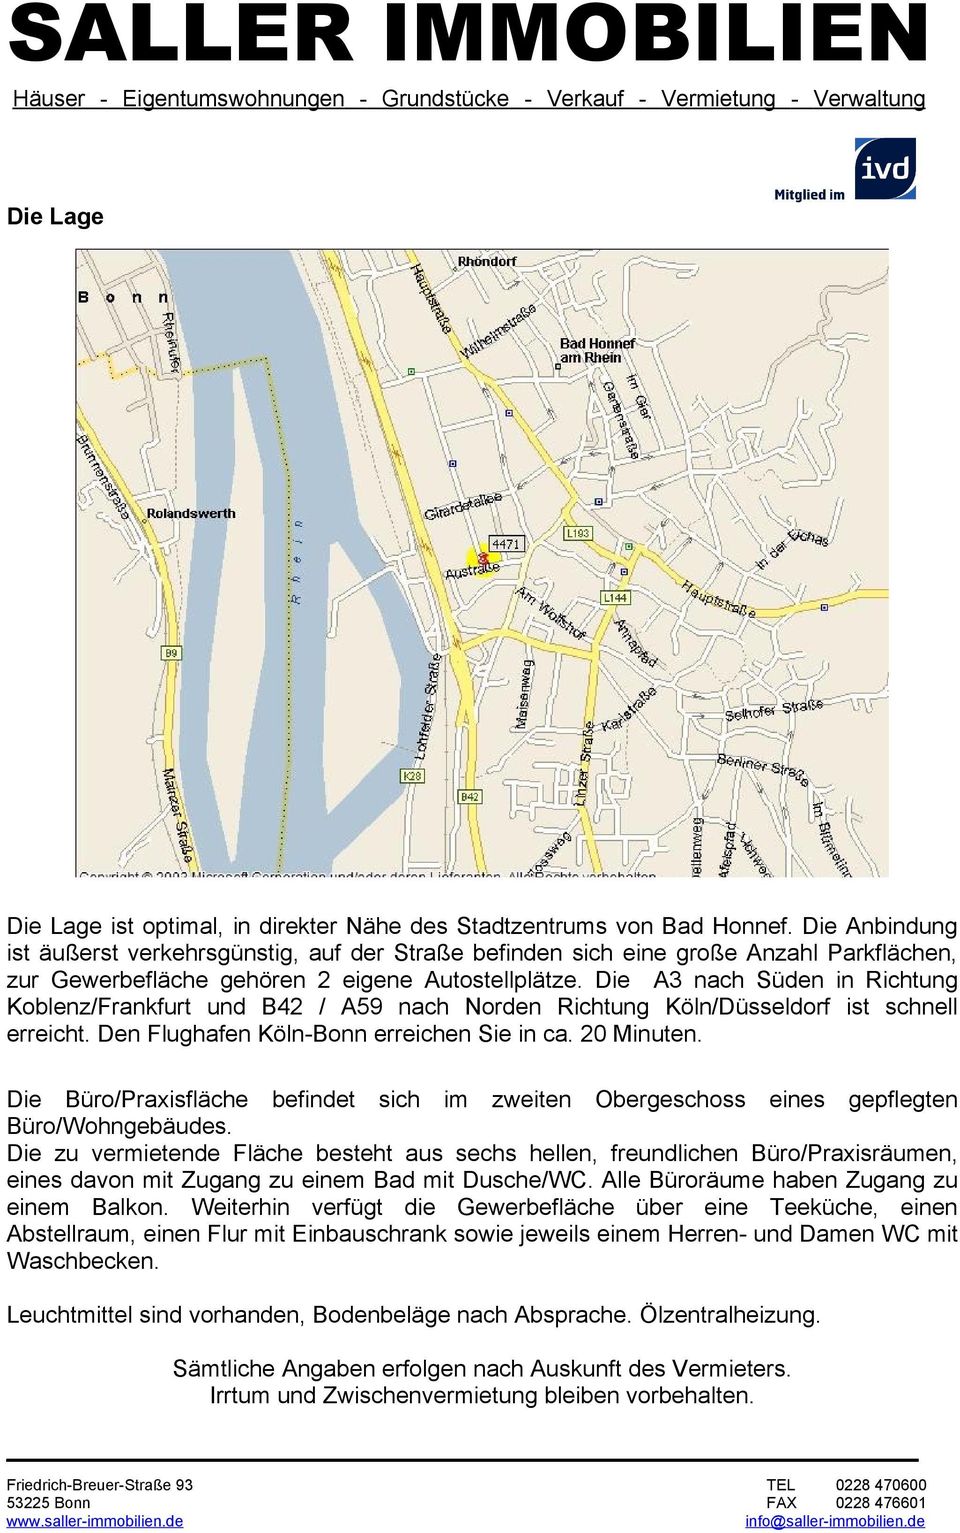 Die A3 nach Süden in Richtung Koblenz/Frankfurt und B42 / A59 nach Norden Richtung Köln/Düsseldorf ist schnell erreicht. Den Flughafen Köln-Bonn erreichen Sie in ca. 20 Minuten.